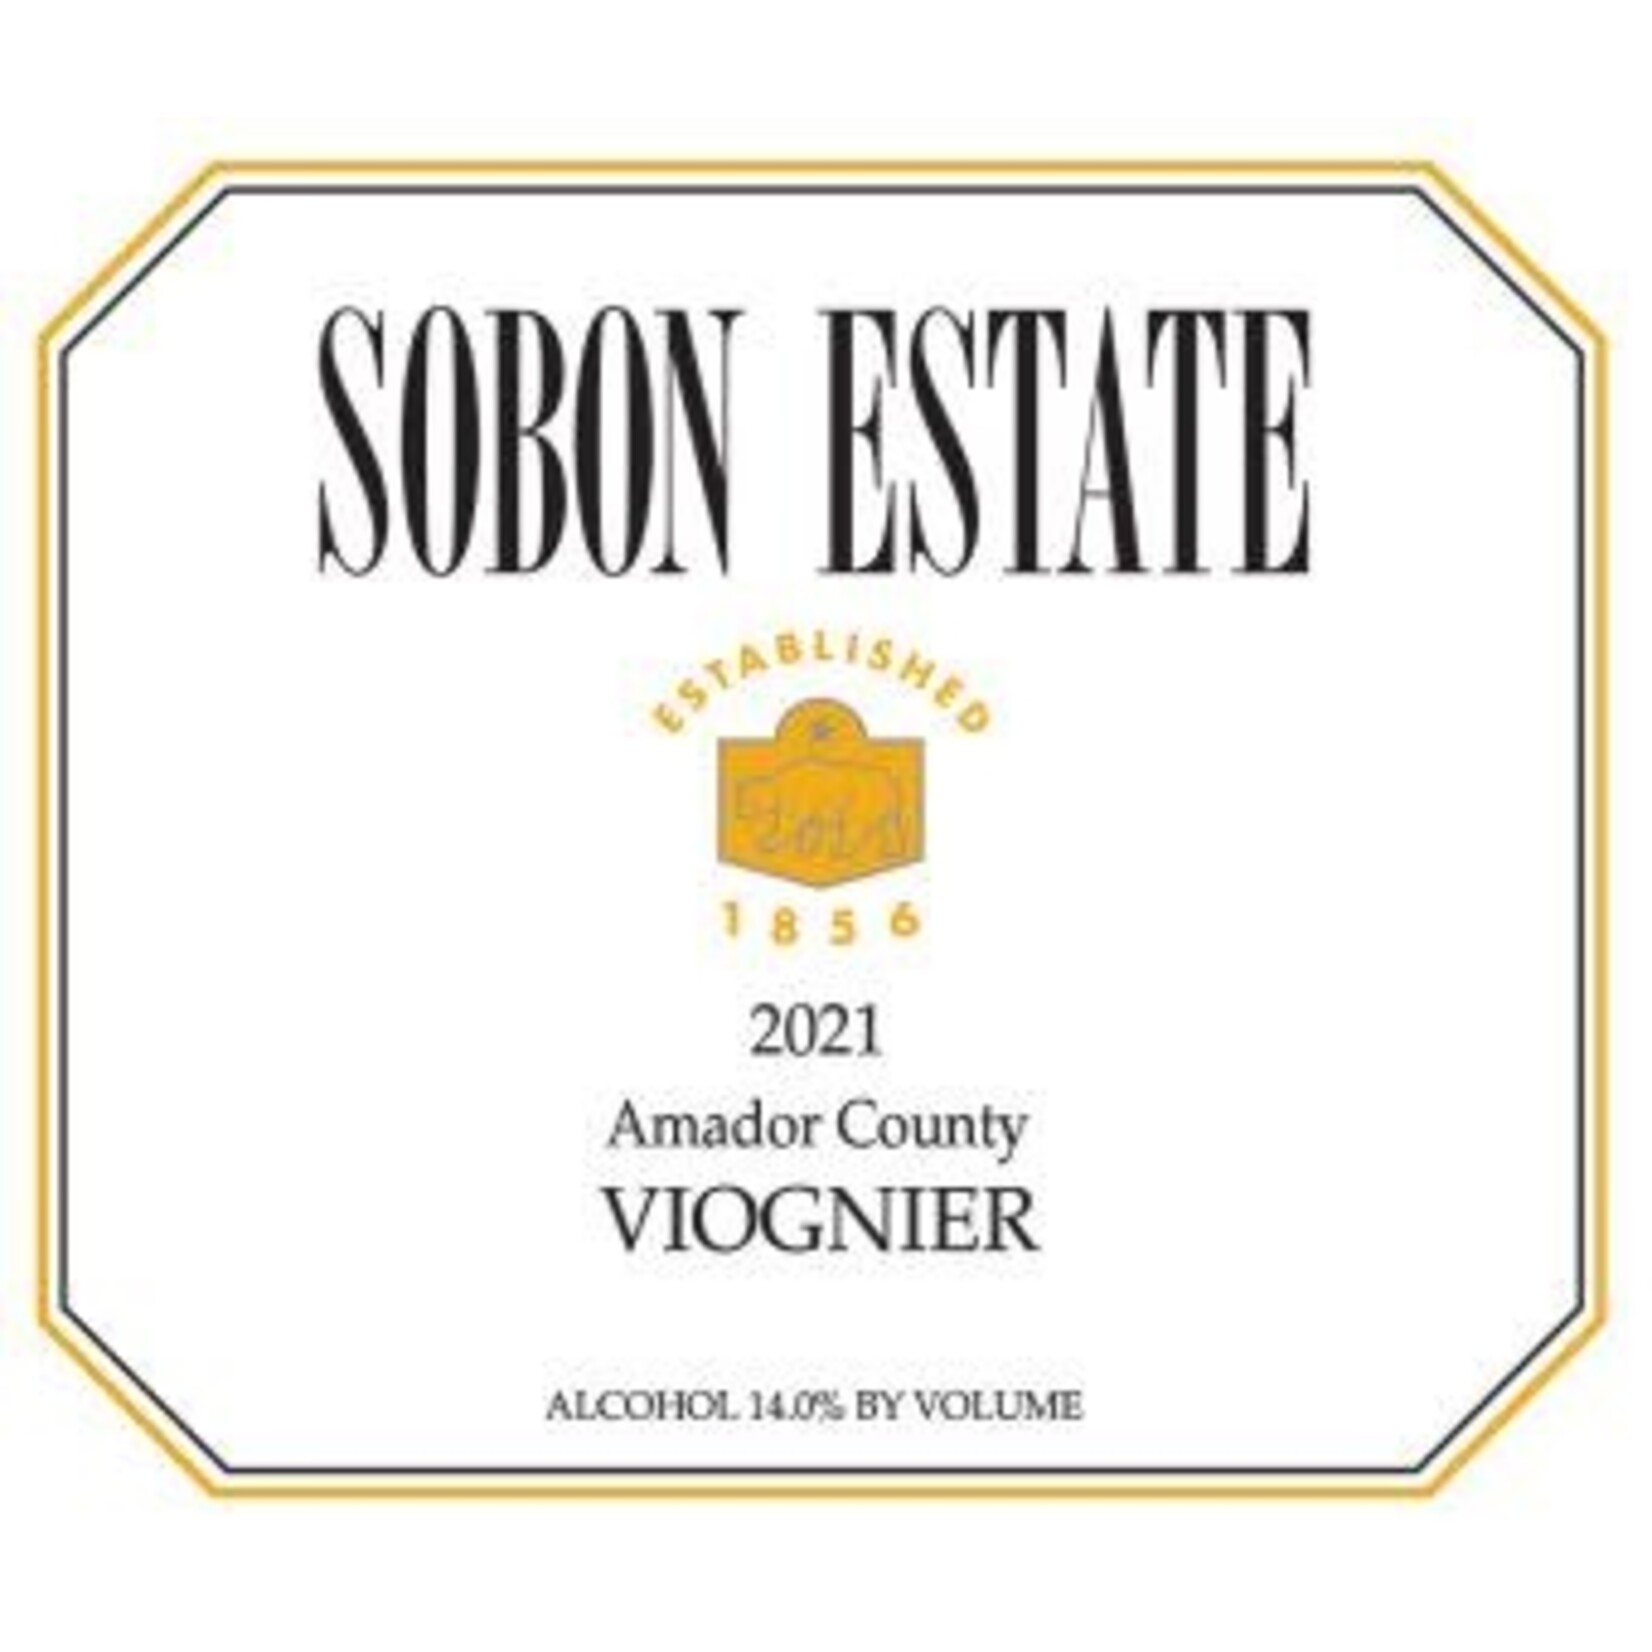 Sobon Estate Sobon Estate Viognier 2021 Amador County  California